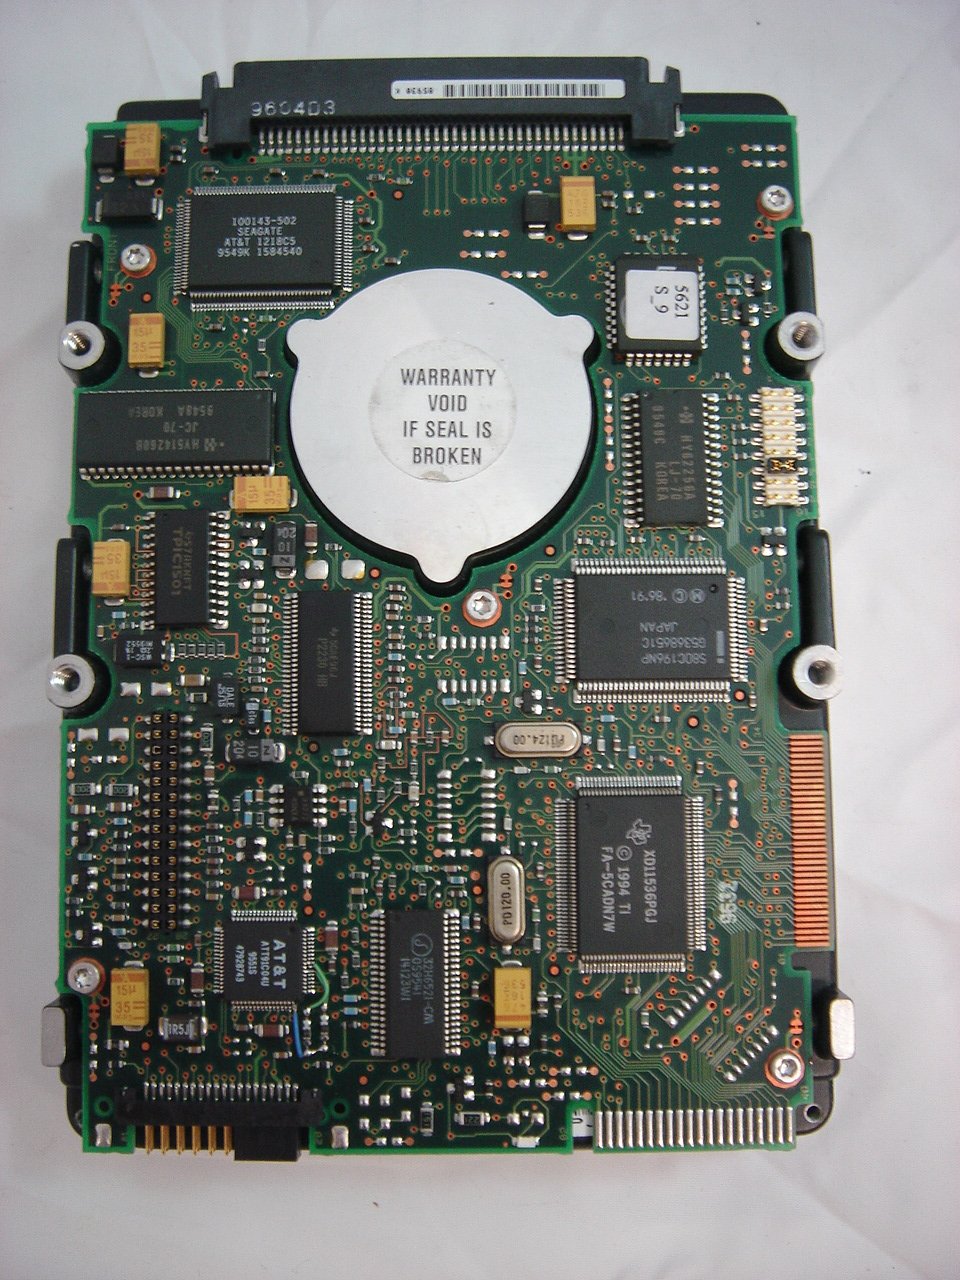 9C4002-011 - SEAGATE 1GB SCSI SCA 80 - Refurbished